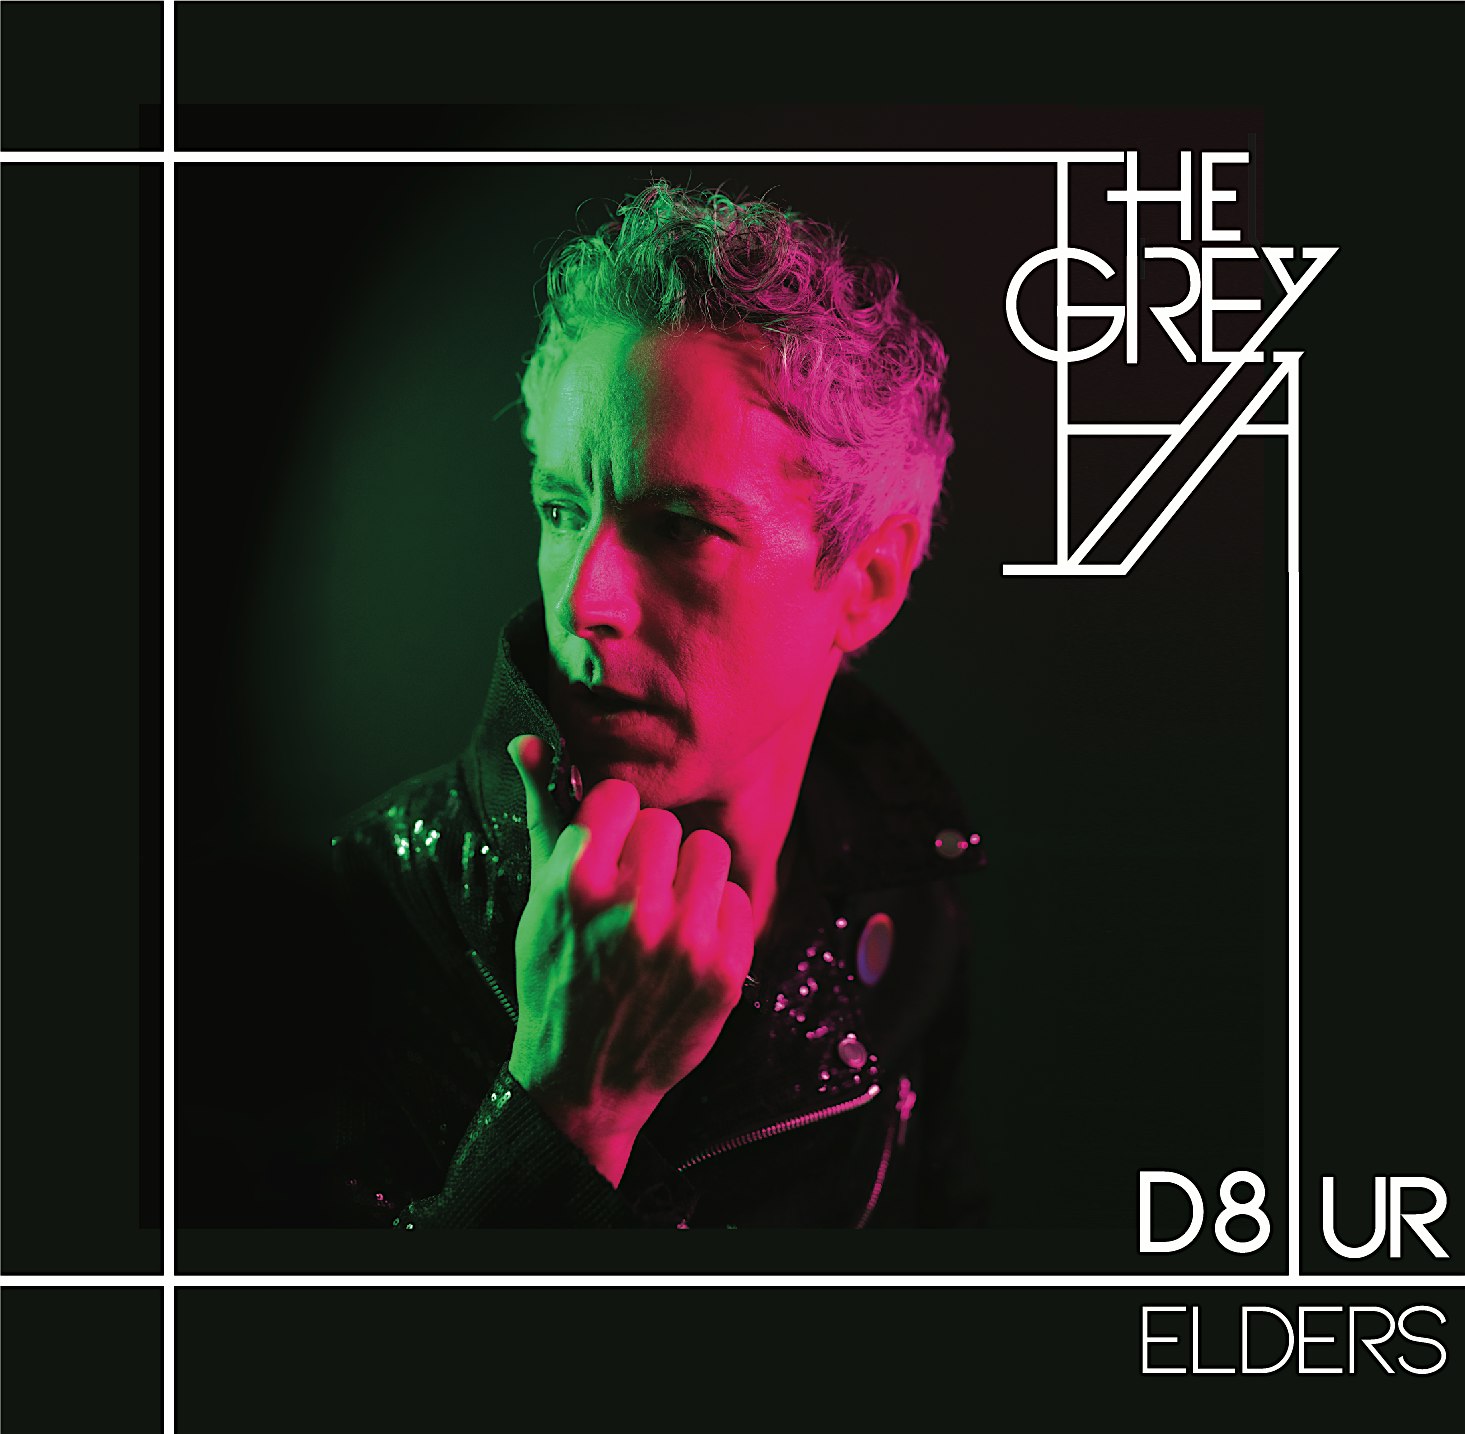 The Grey A: D8 Ur Elders Album Release